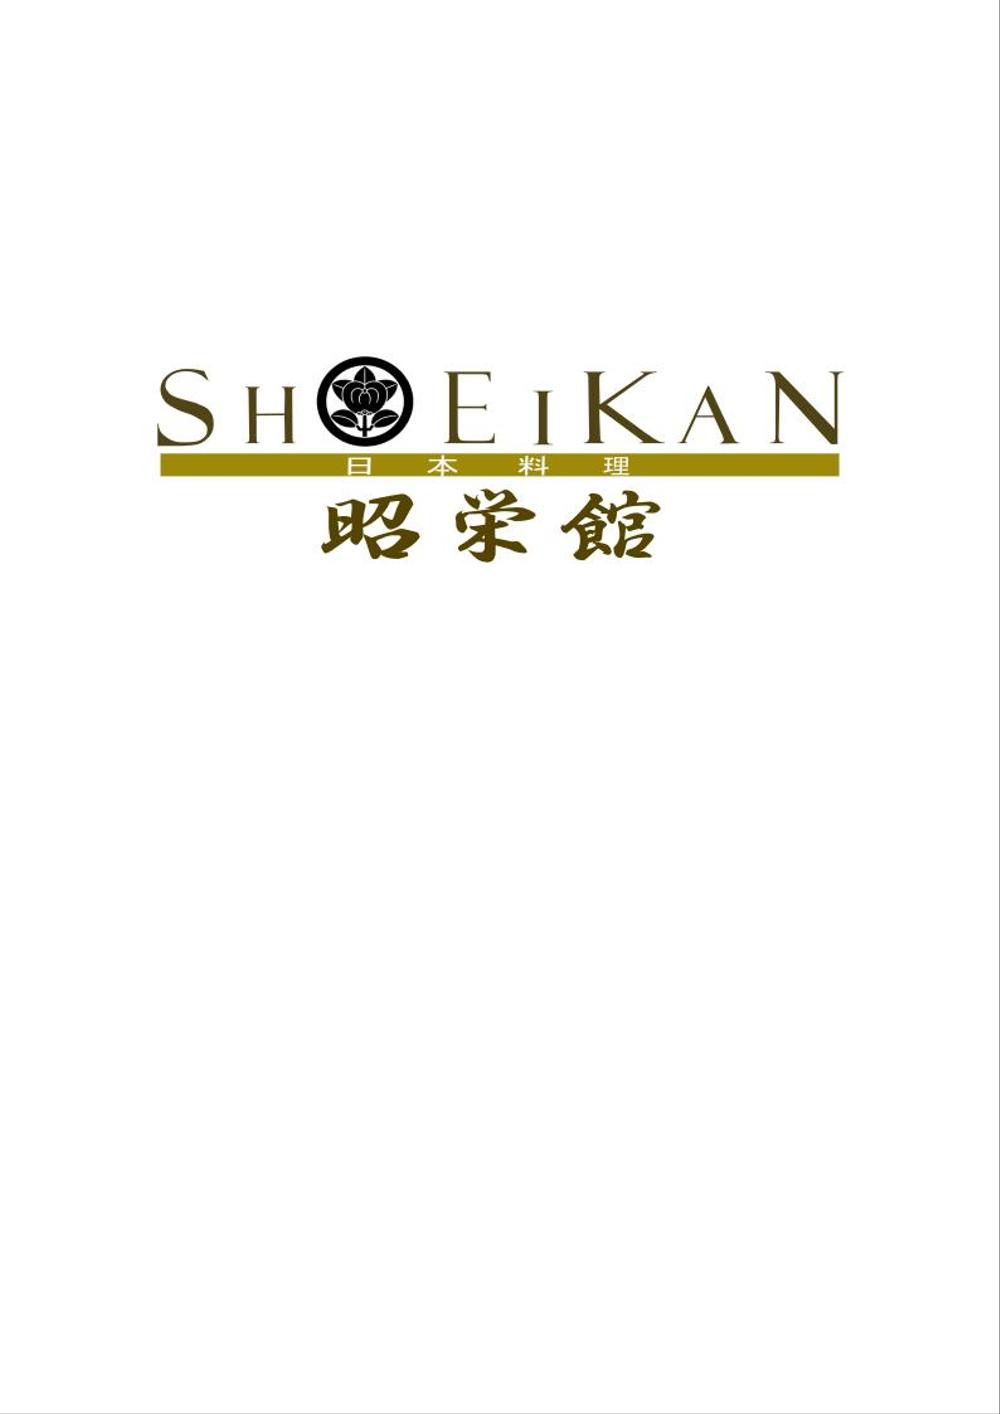 shoeikan-1.png